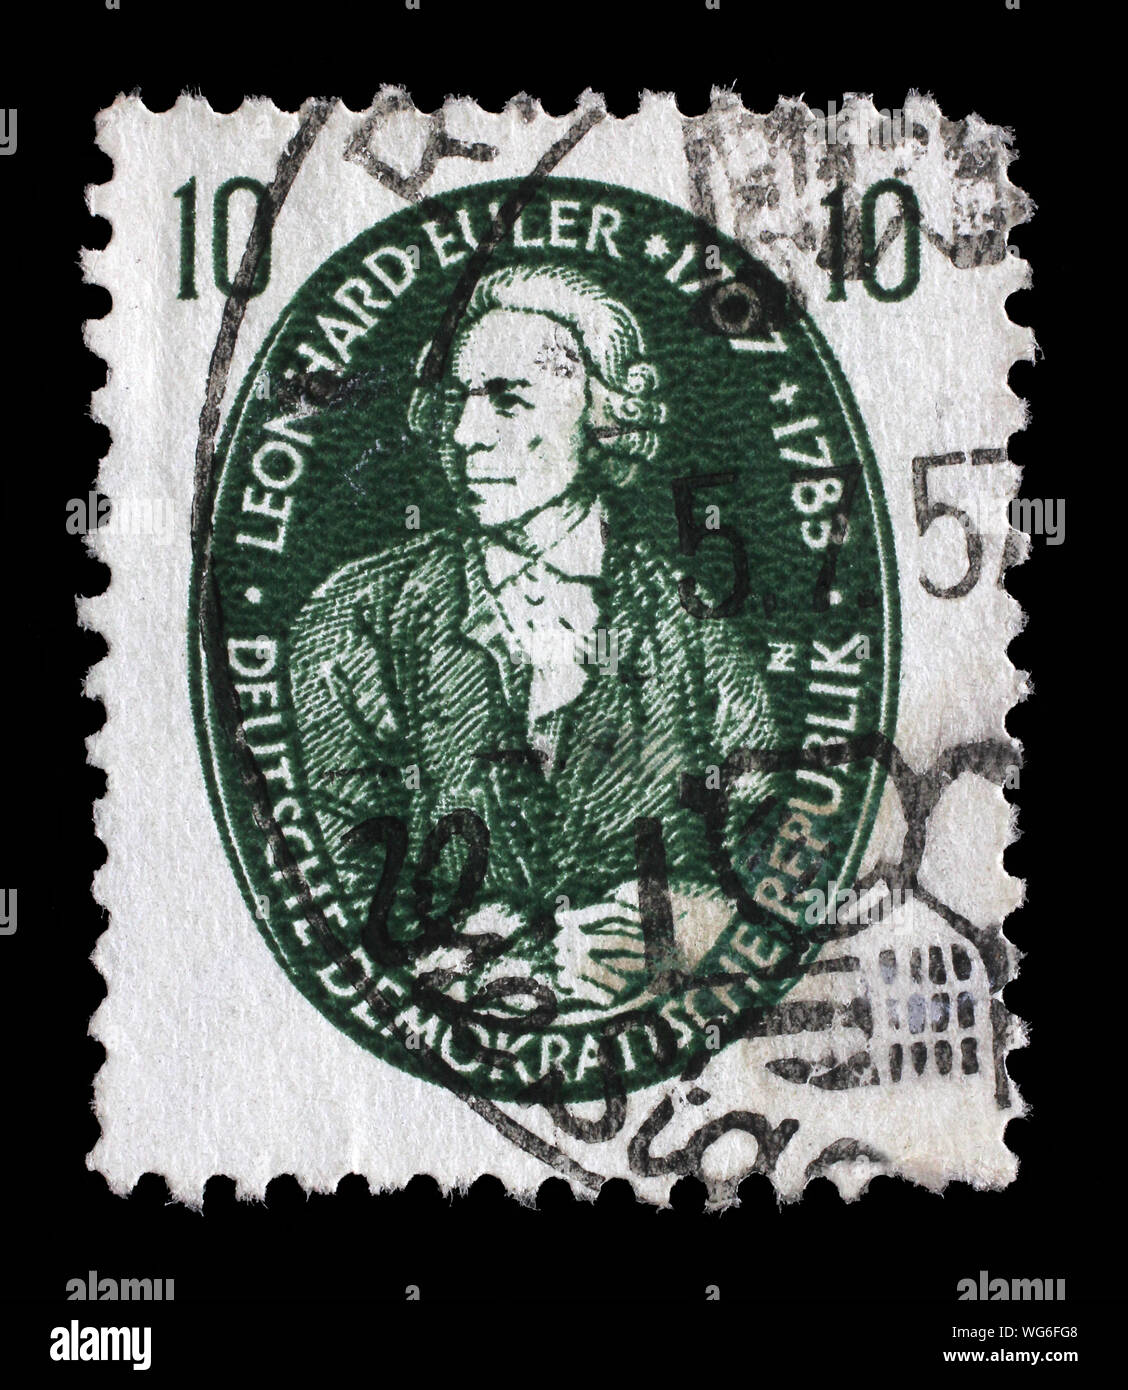 Stempel ausgestellt in Deutschland - Demokratische Republik (DDR) zeigt Leonhard Euler, Mathematiker, Physiker, Astronom, Logiker und Ingenieur, circa 1957. Stockfoto